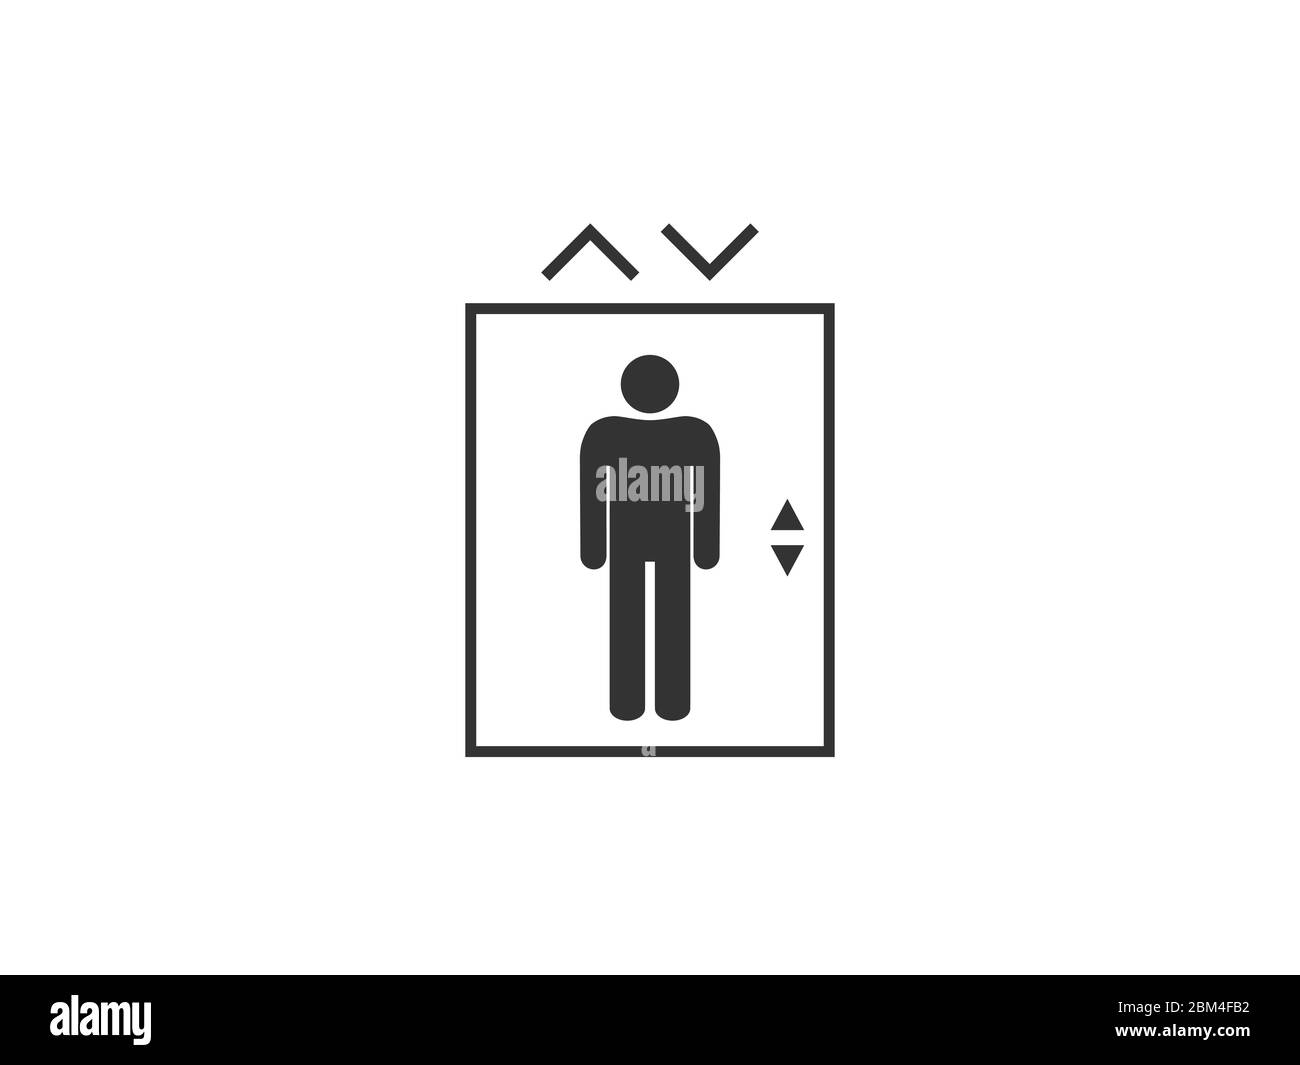 Aufzug, Symbol für Aufzug. Vektorgrafik, flaches Design. Stock Vektor